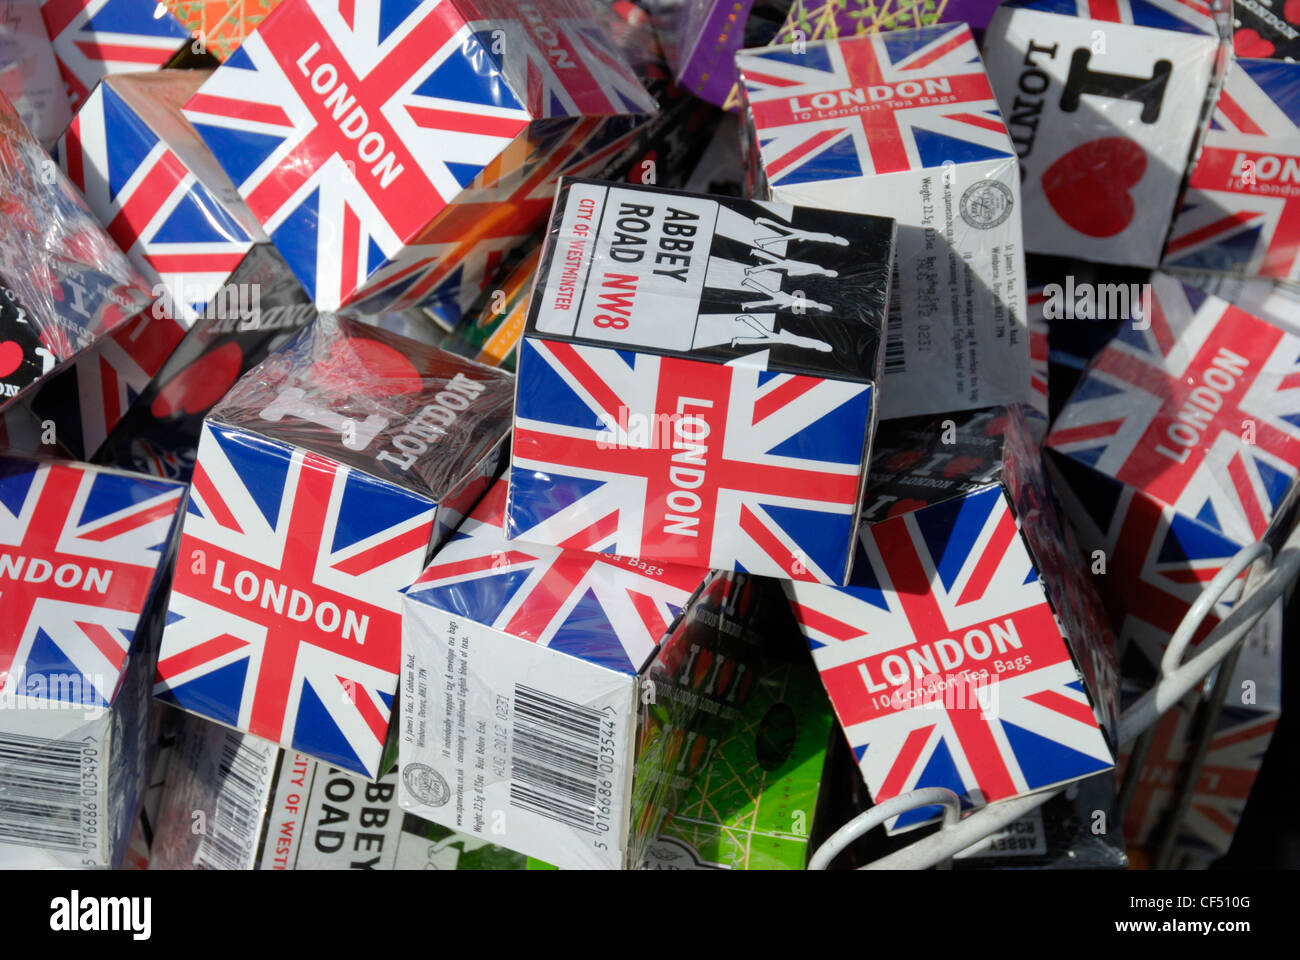 Pacchetti di Londra souvenir bustine di tè in vendita. Foto Stock